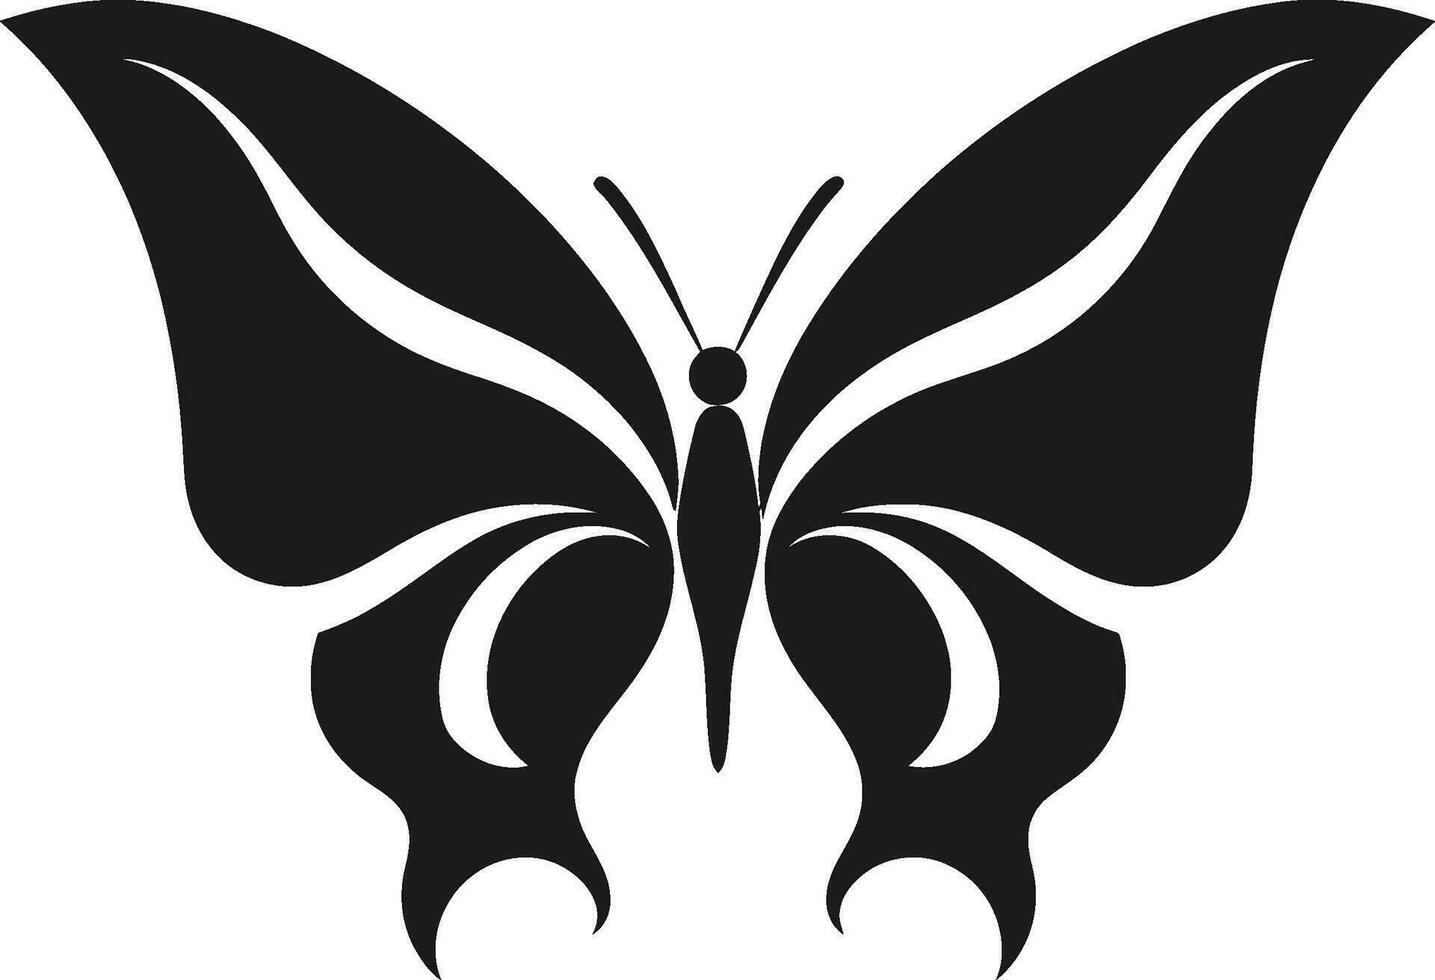 Sleek Wings Black Butterfly Icon Mystique Takes Flight Black Butterfly Emblem vector